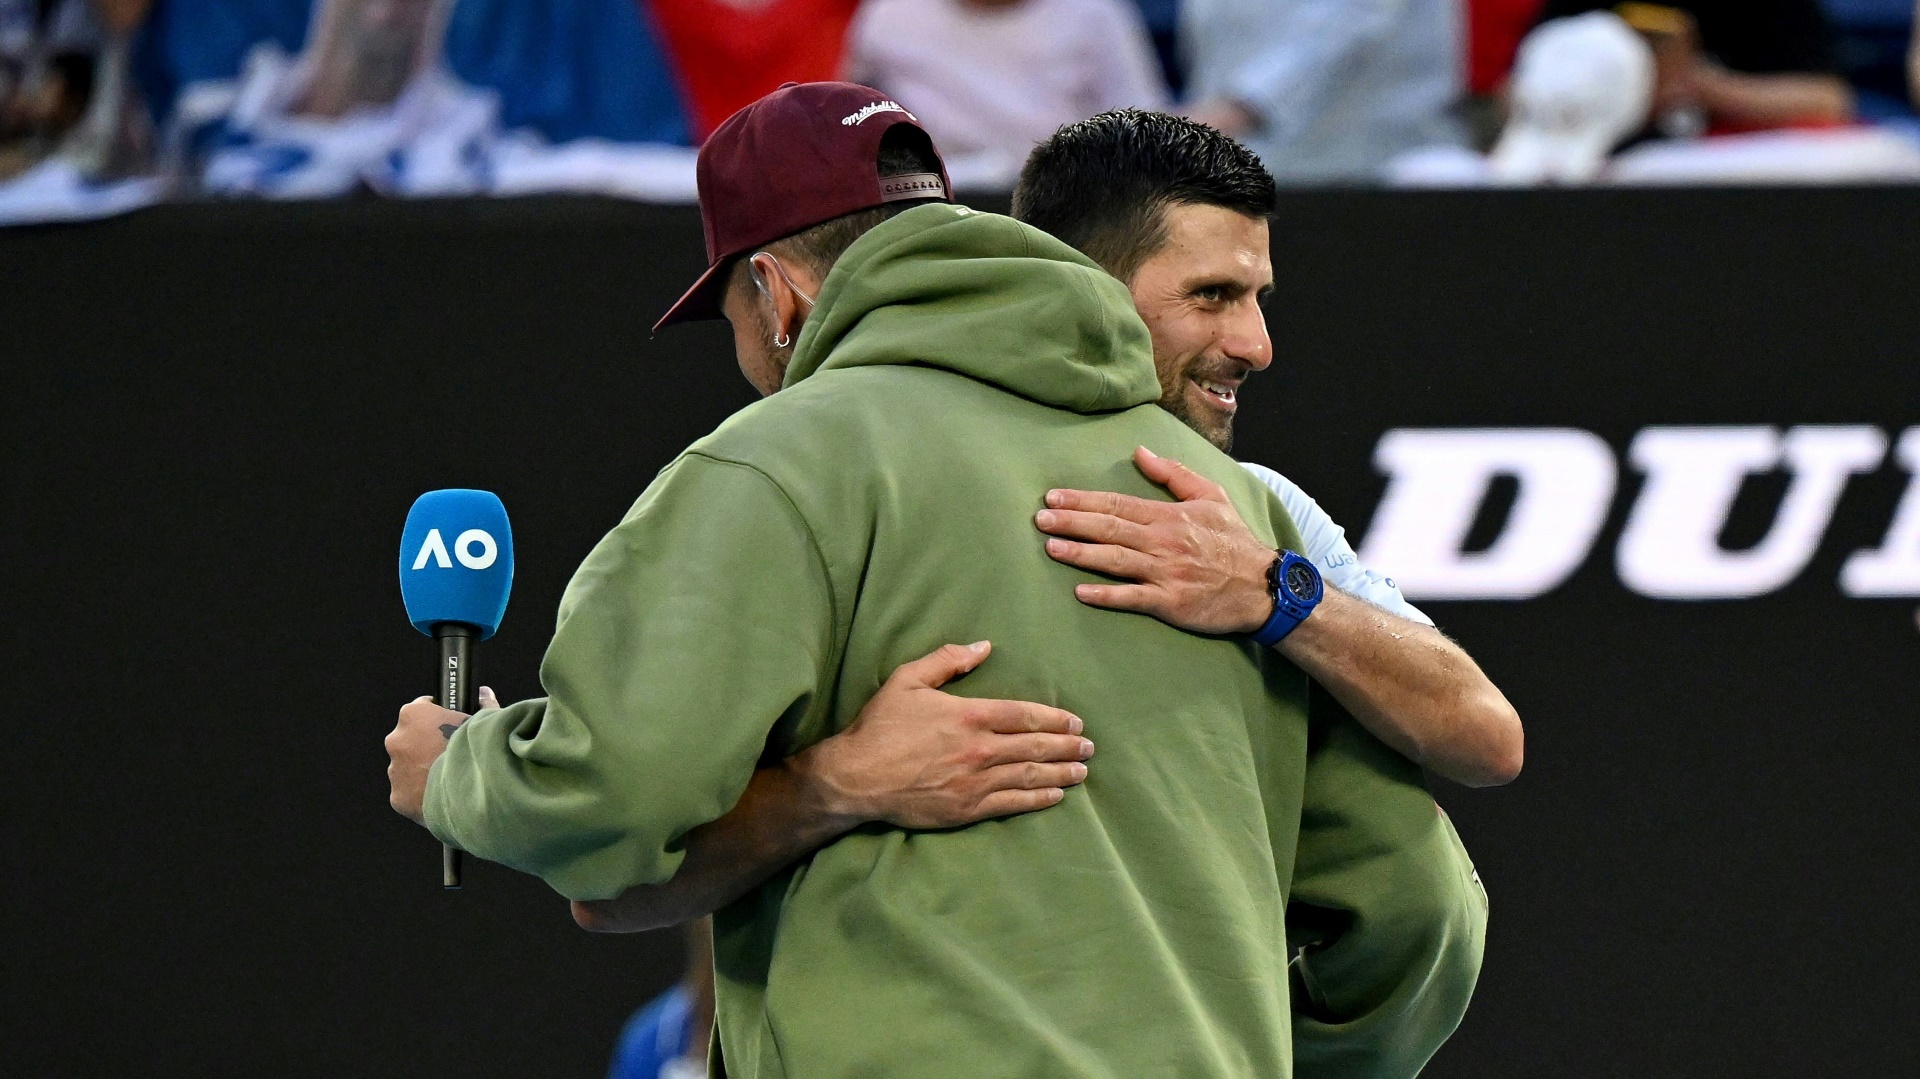 Verstehen sich gut: Novak Djokovic und Nick Kyrgios